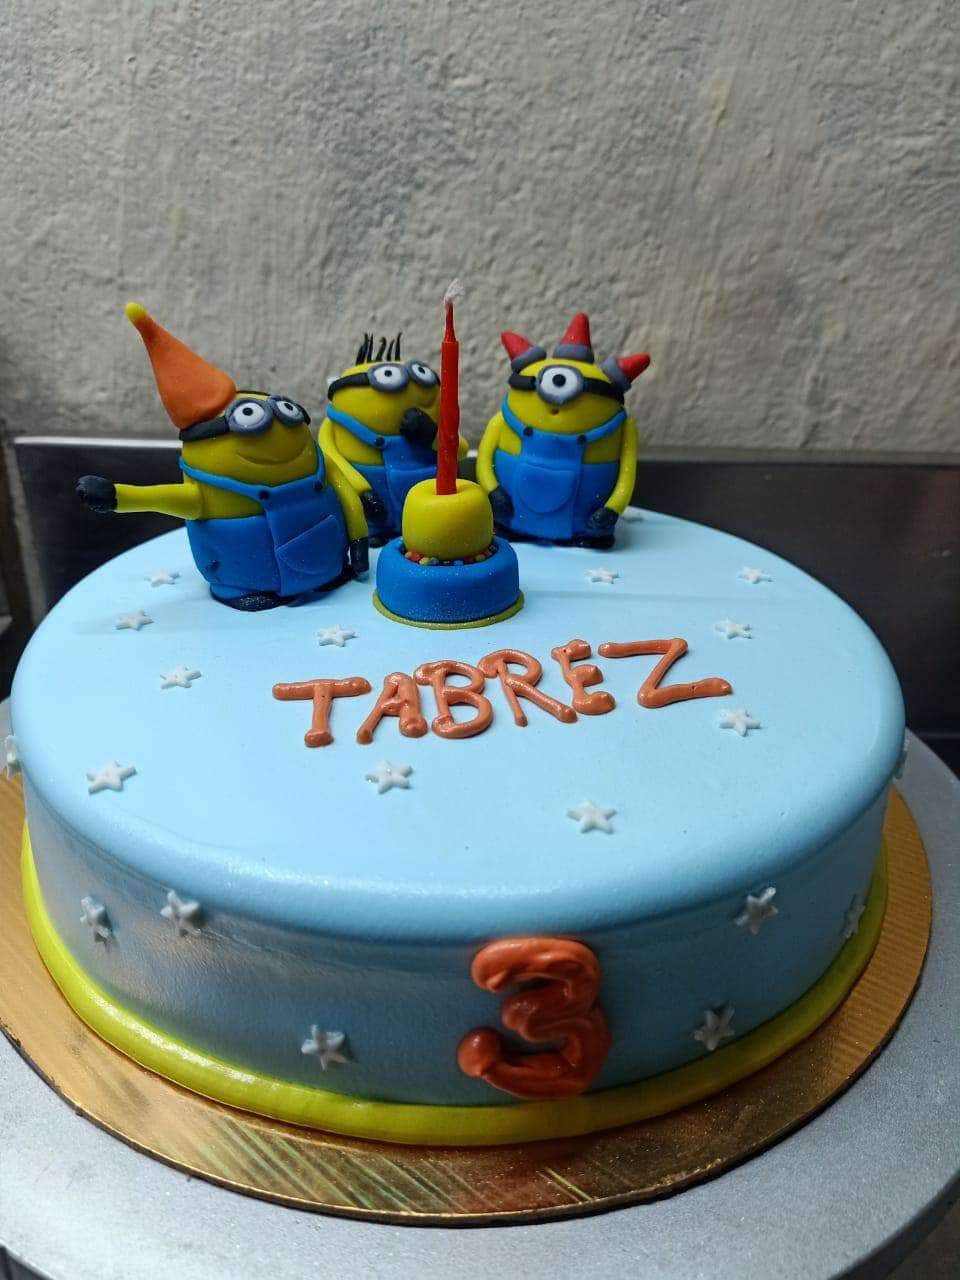 Tabrez Happy Birthday Cakes Pics Gallery